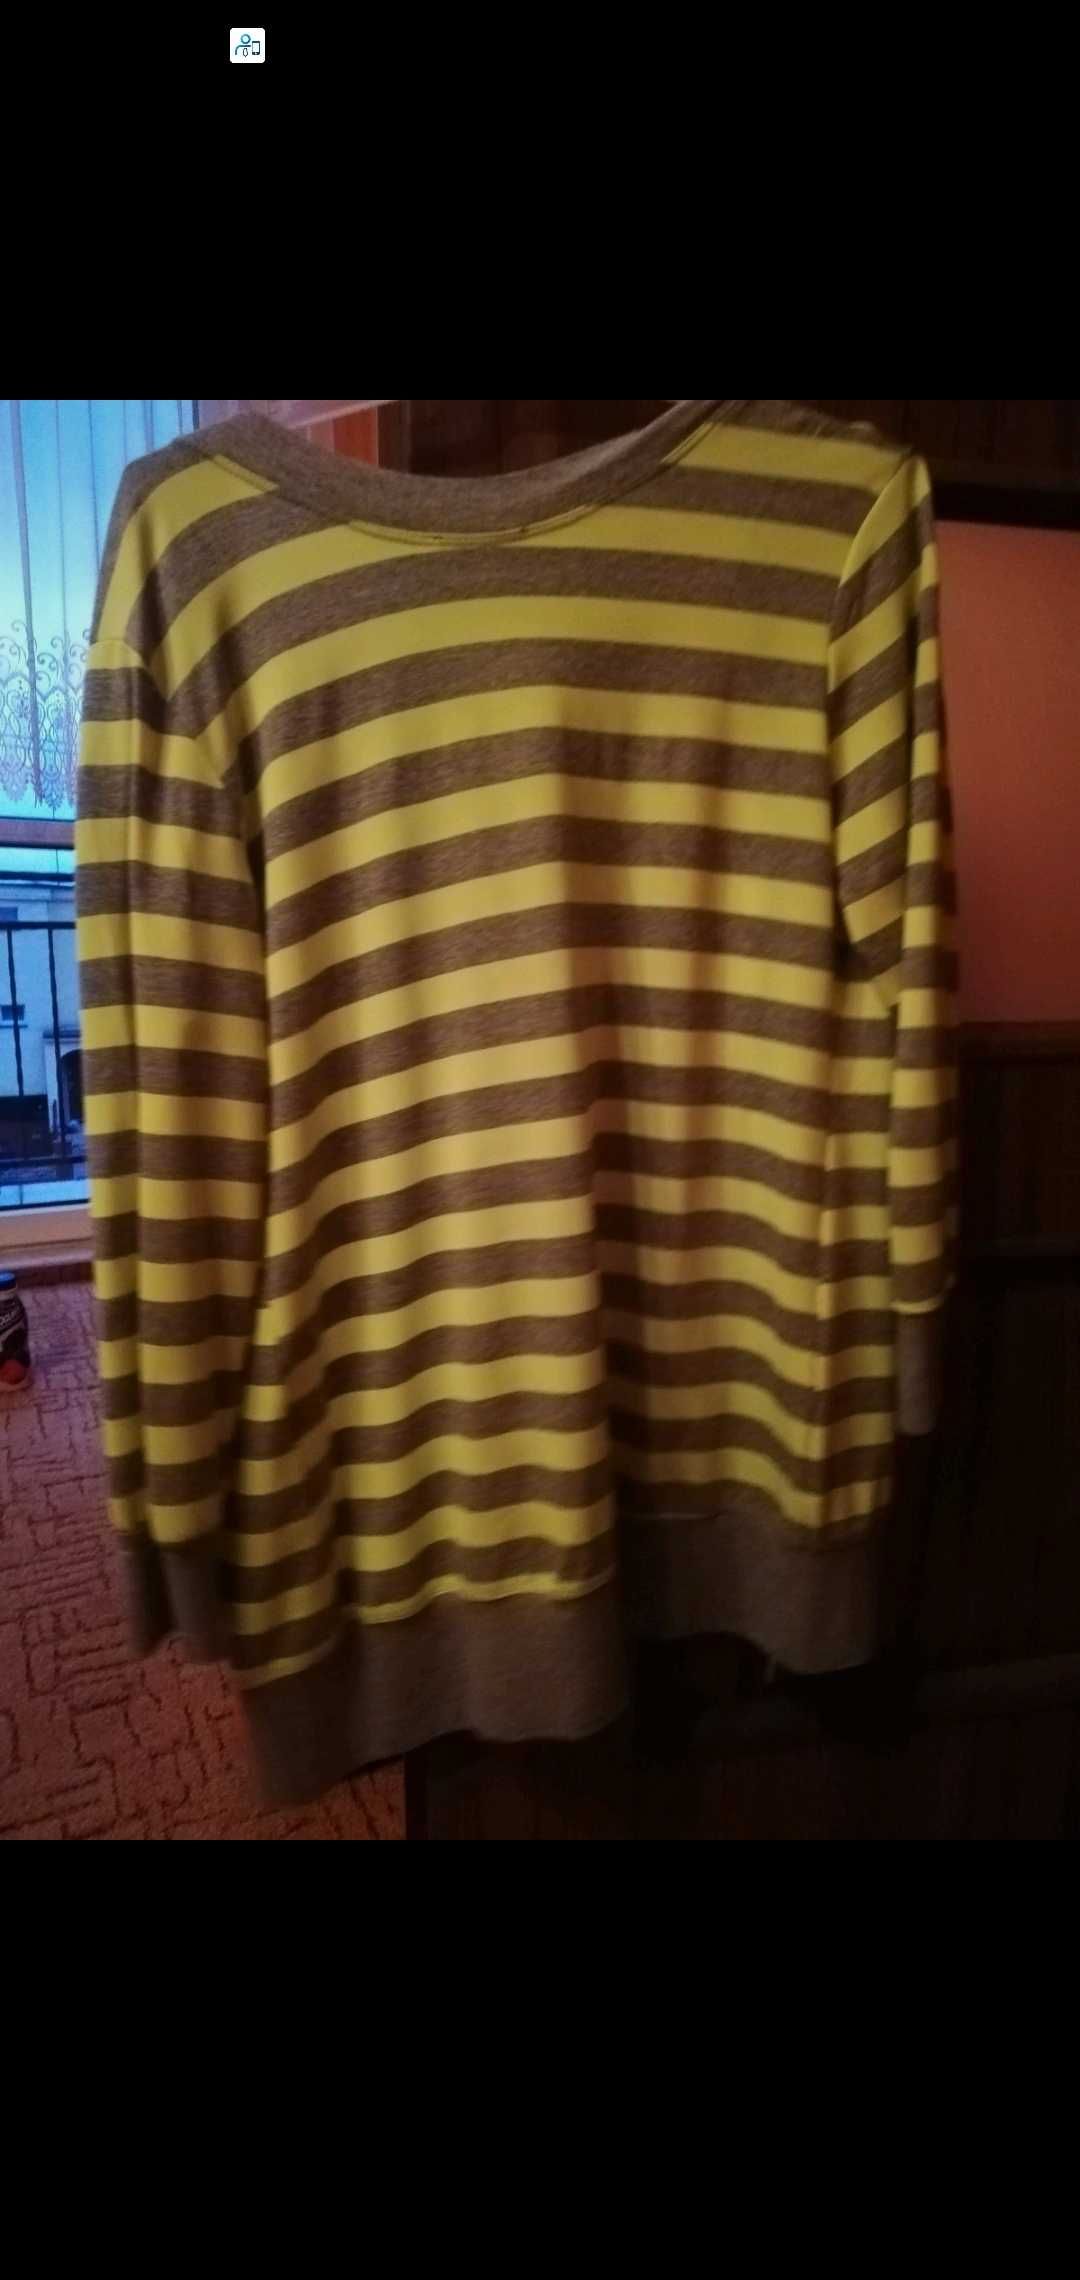 Sprzedam sweterek w kolorze żółtym jaskrawym w szare paski